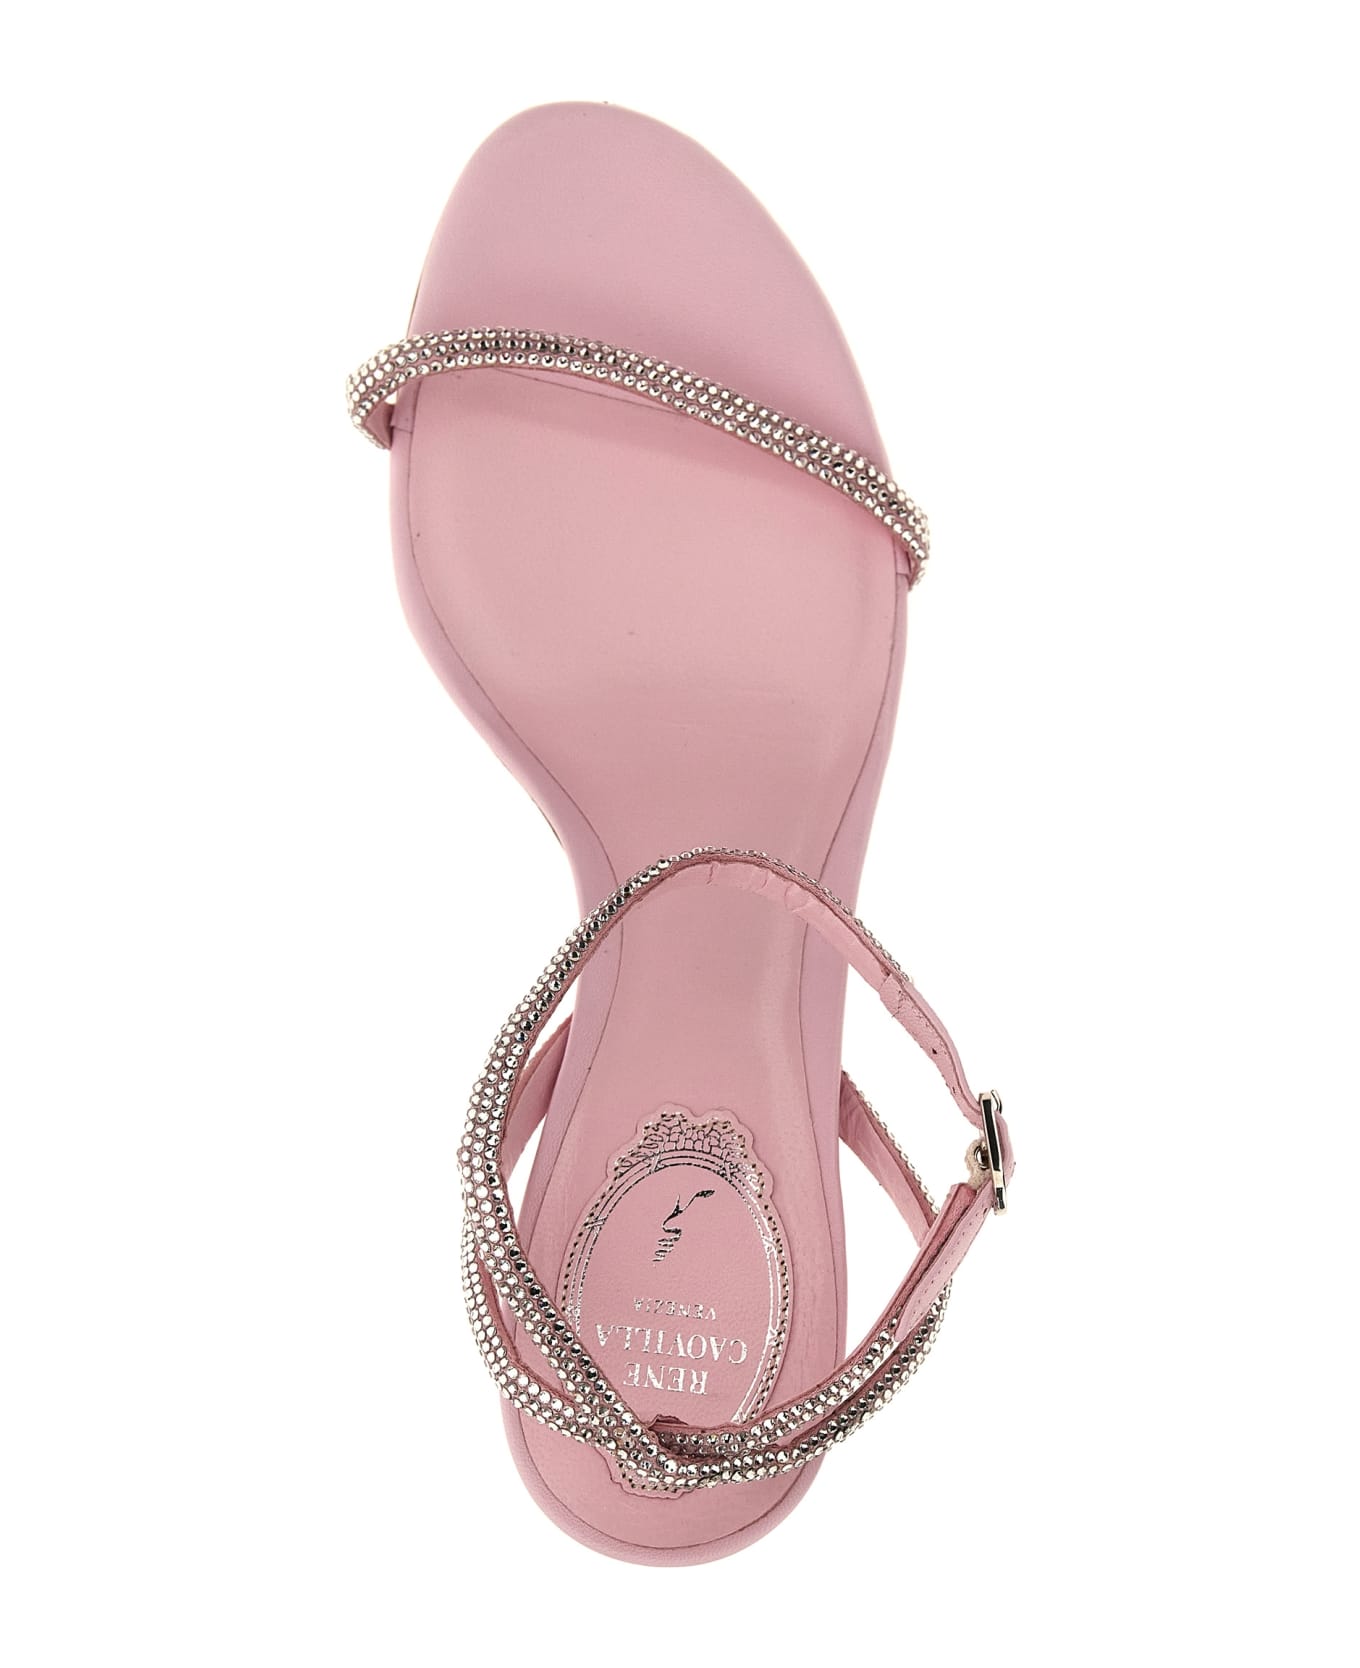 René Caovilla 'ellabrita' Sandals - Pink